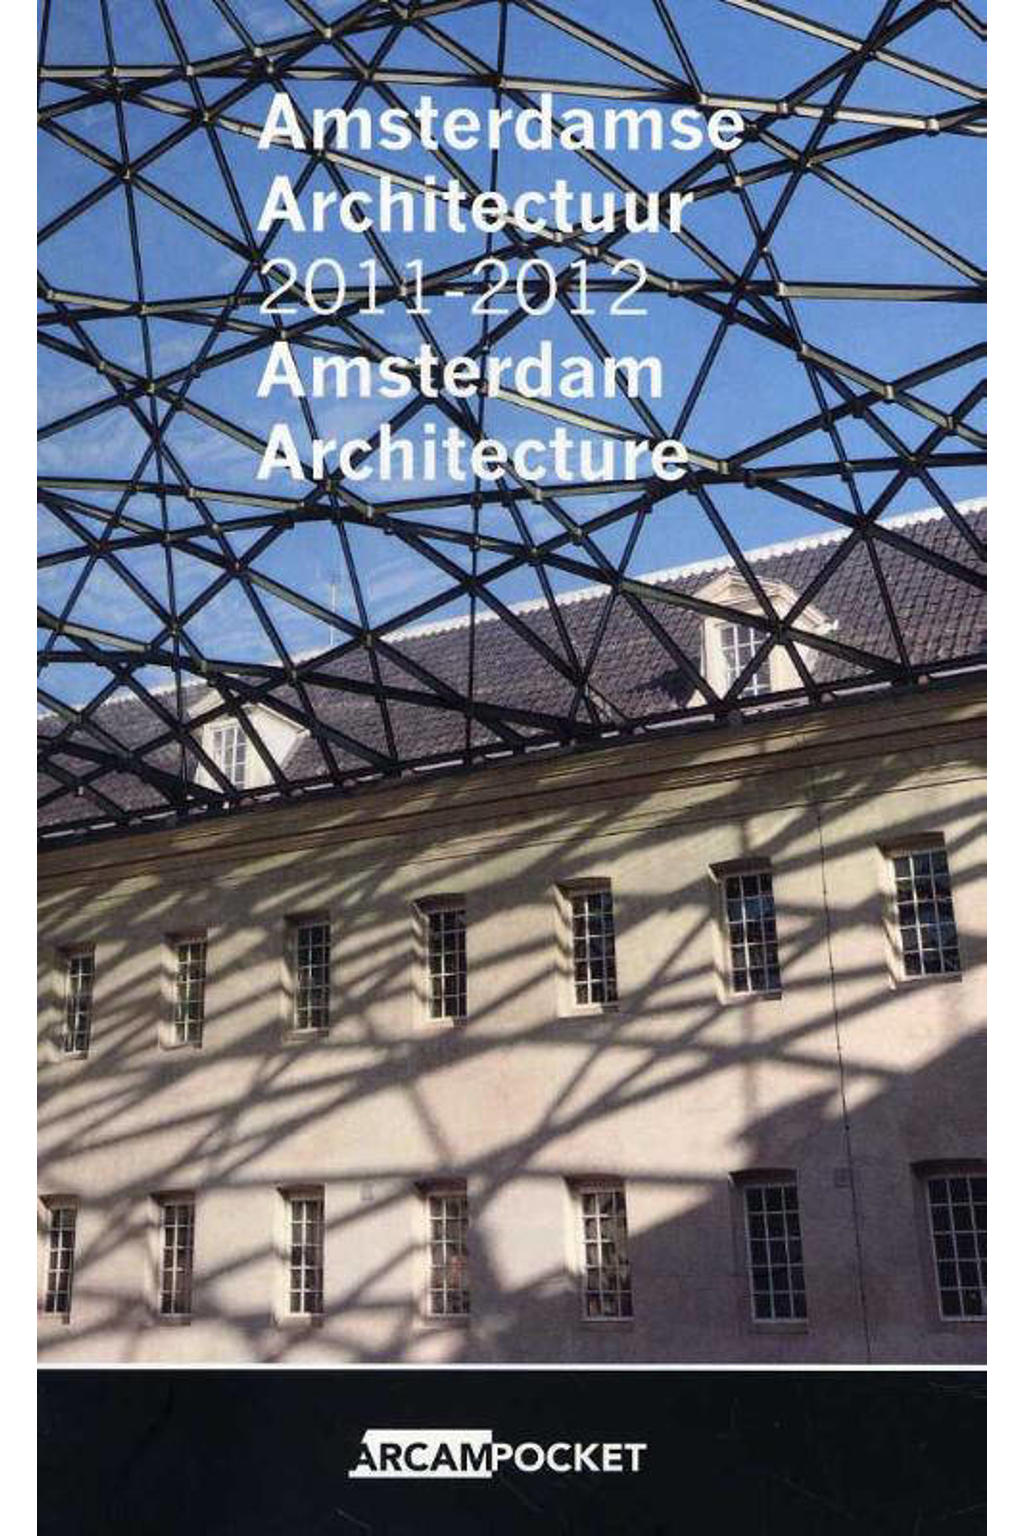 Arcam pocket: Amsterdamse architectuur 2011-2012 Amsterdam architecture